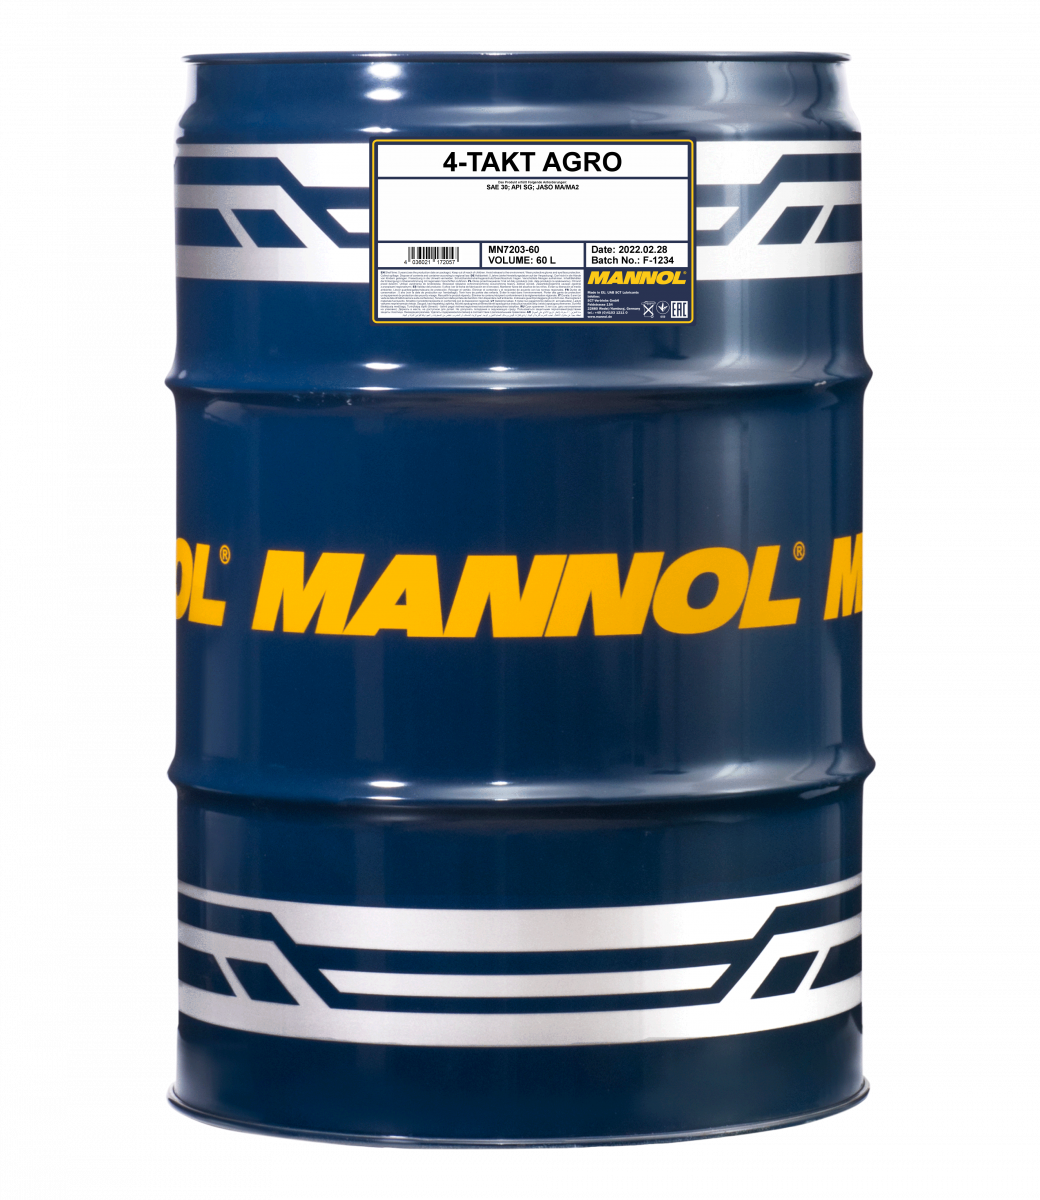 Mannol 7203 4-Takt Agro SAE 30 Rasenmäheröl Motoröl 60 Liter